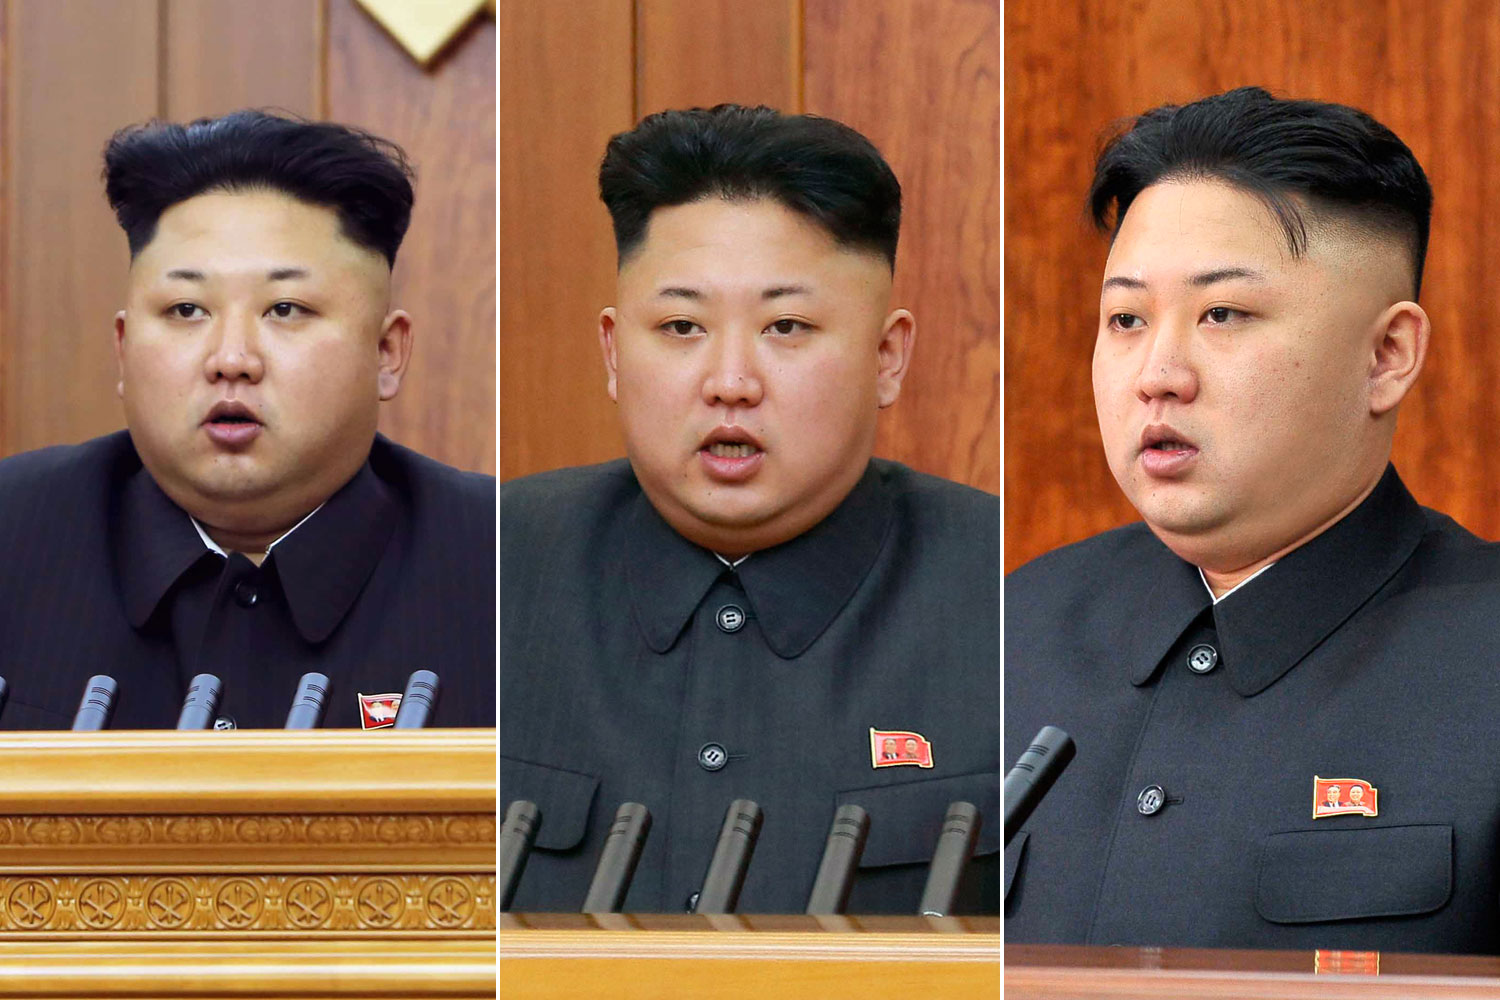 Kim Jong-Un's eyebrows